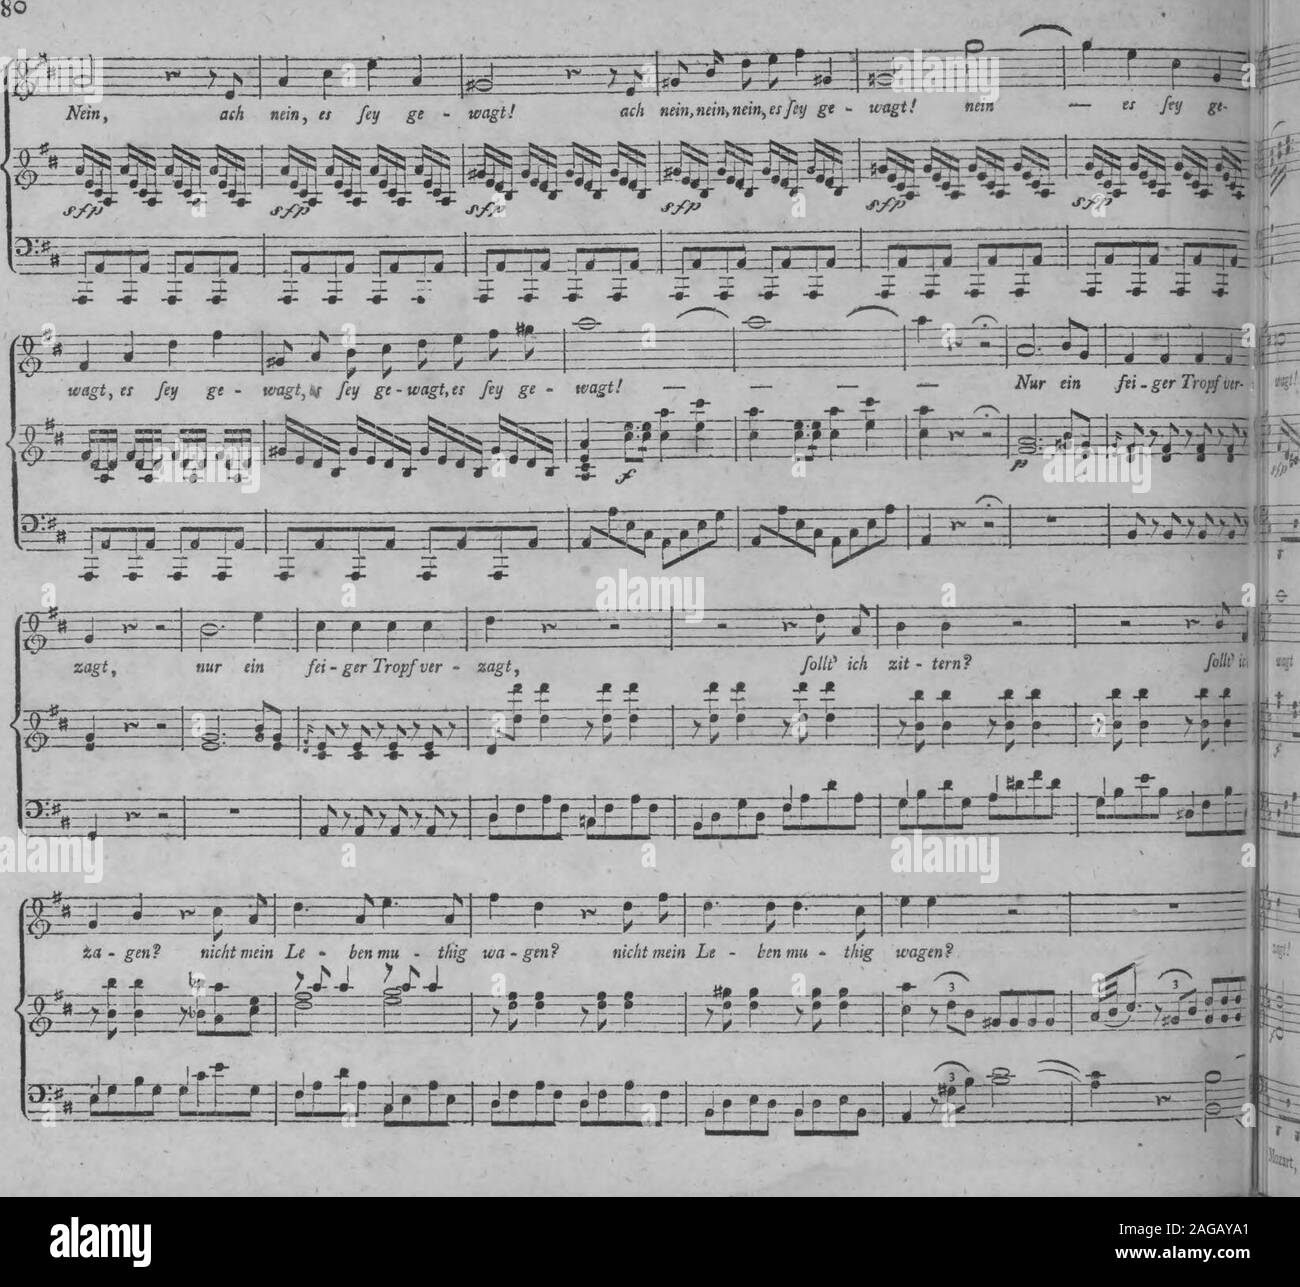 . Die entfuhrung aus dem Serail: ein komischen Singspiels in drey Aufzugen (1796). Ü = Fey ge- wagt! Ach nein -. Nein, nein, es Fey ge- Stockfoto